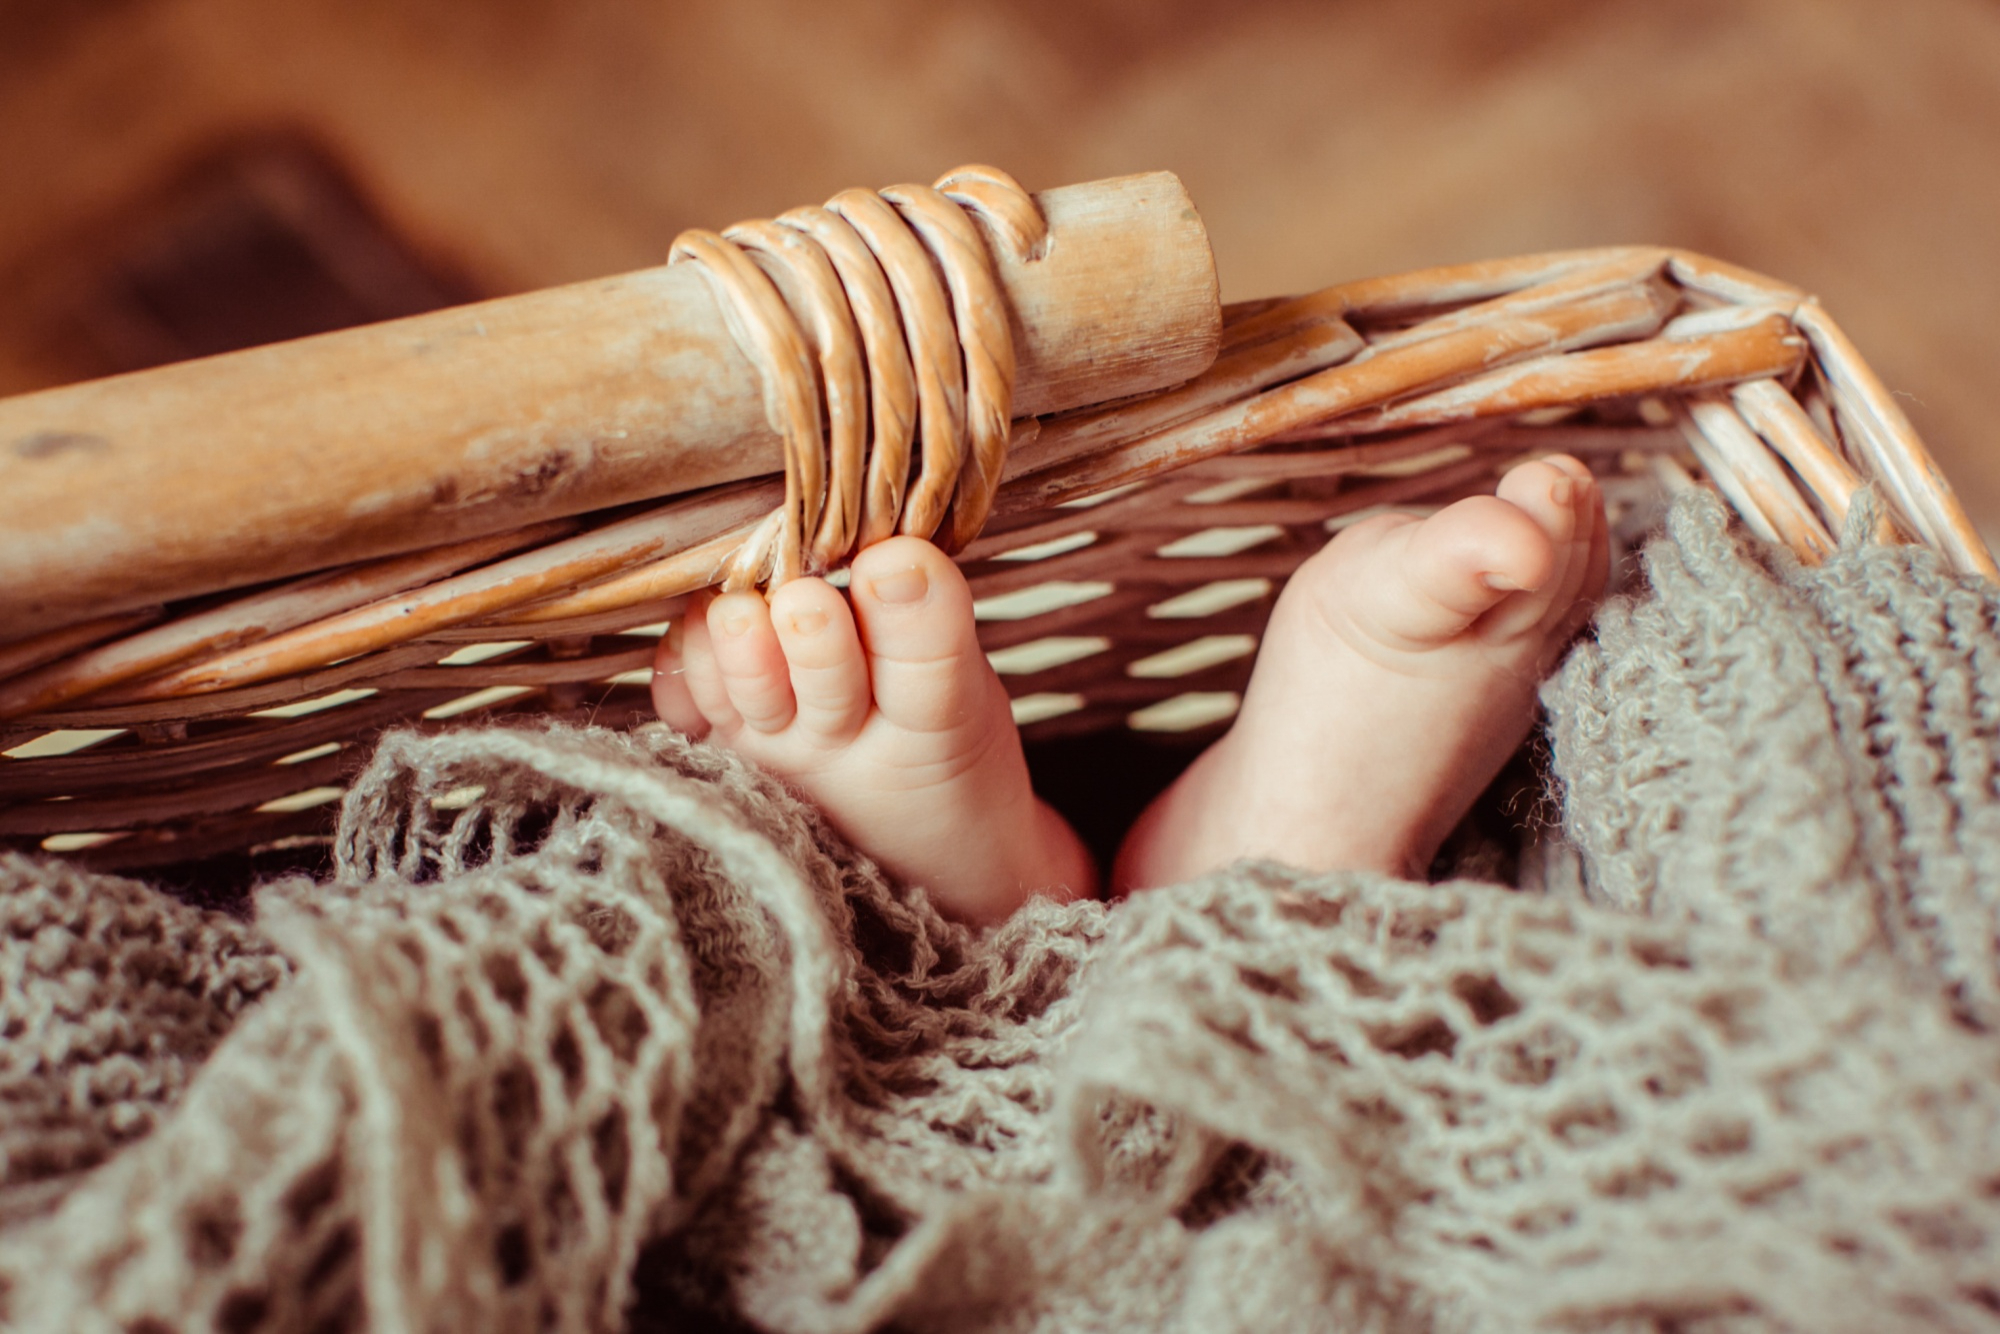 Los pies de un bebé tumbado en una cesta | Foto: Freepik